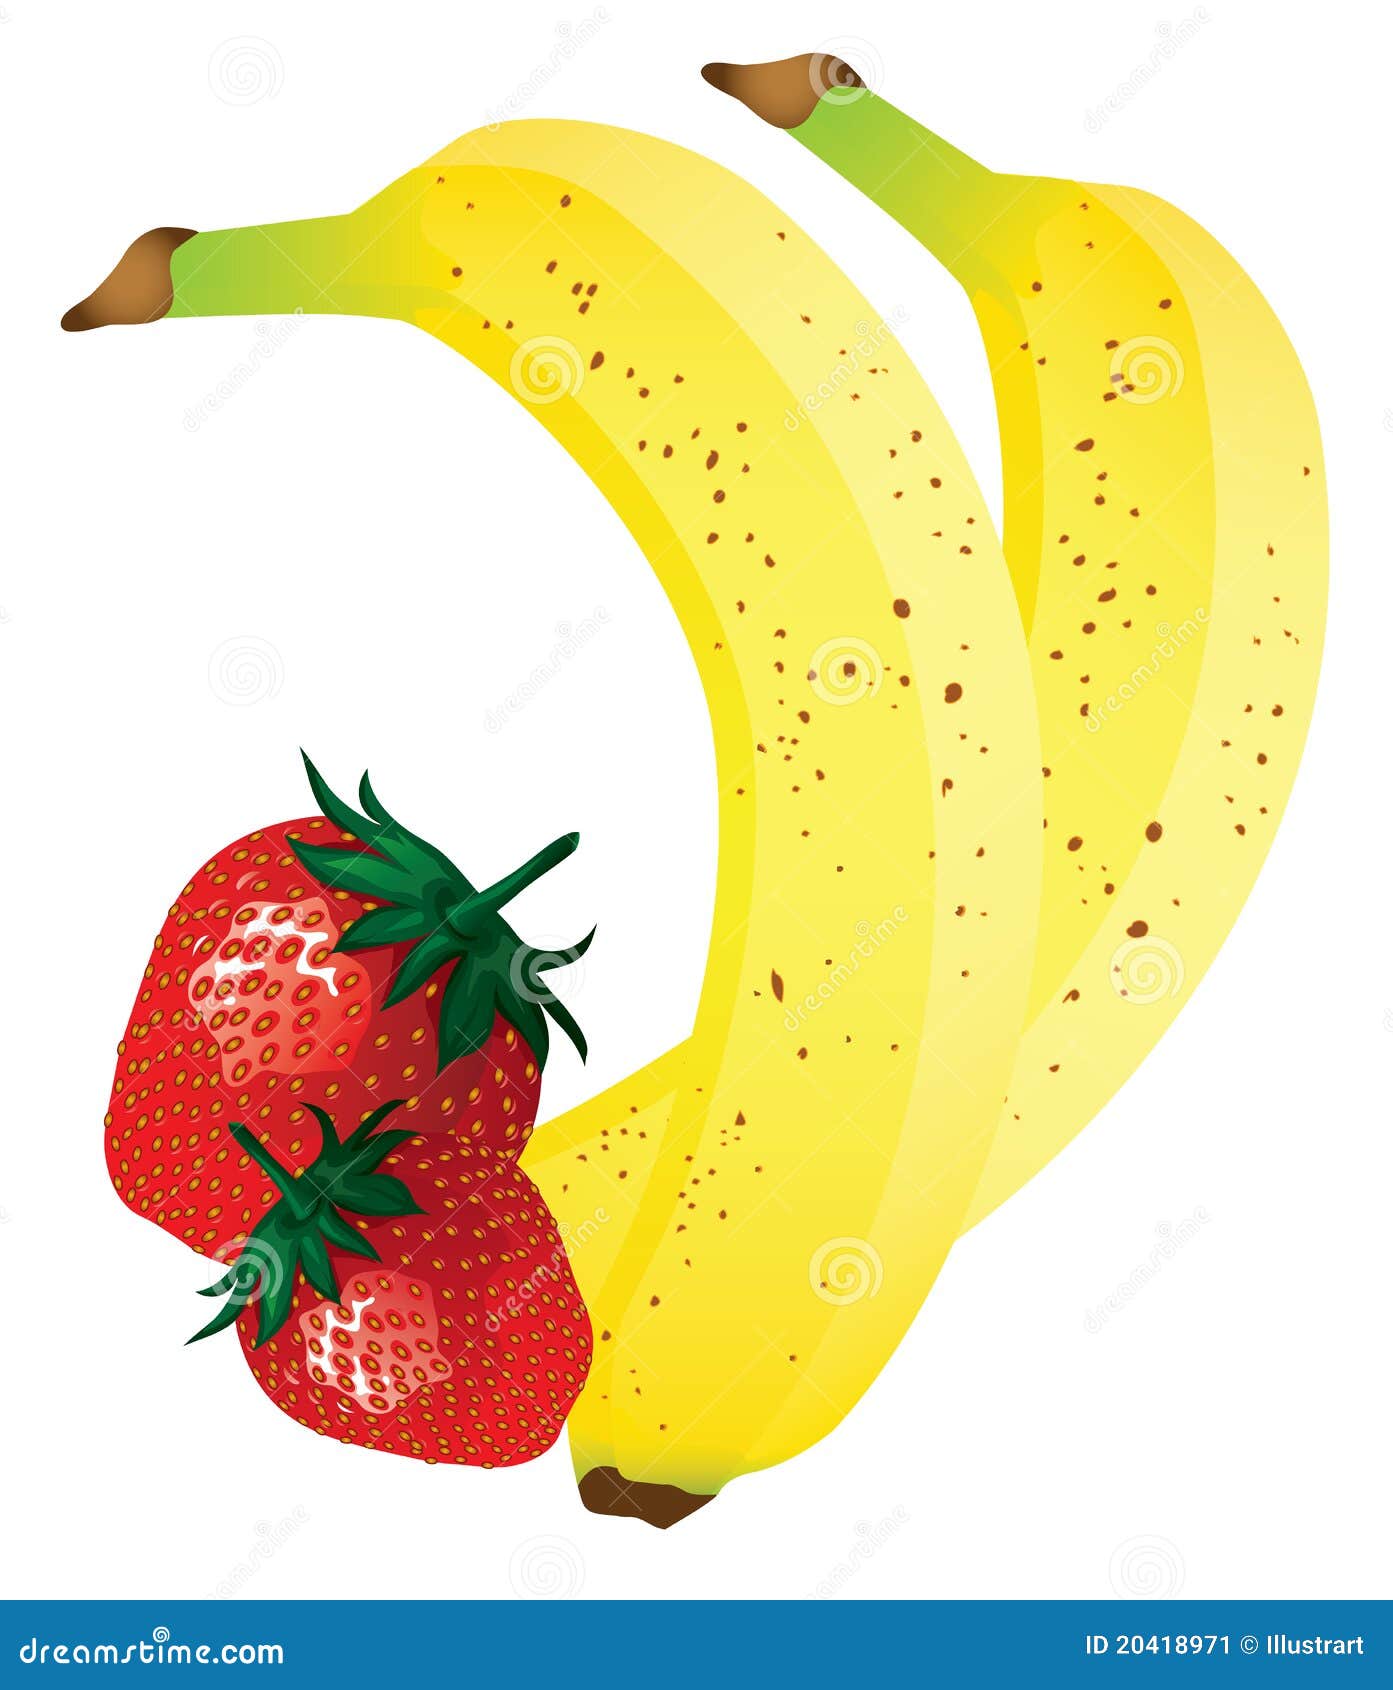 strawberry banana clipart - photo #14